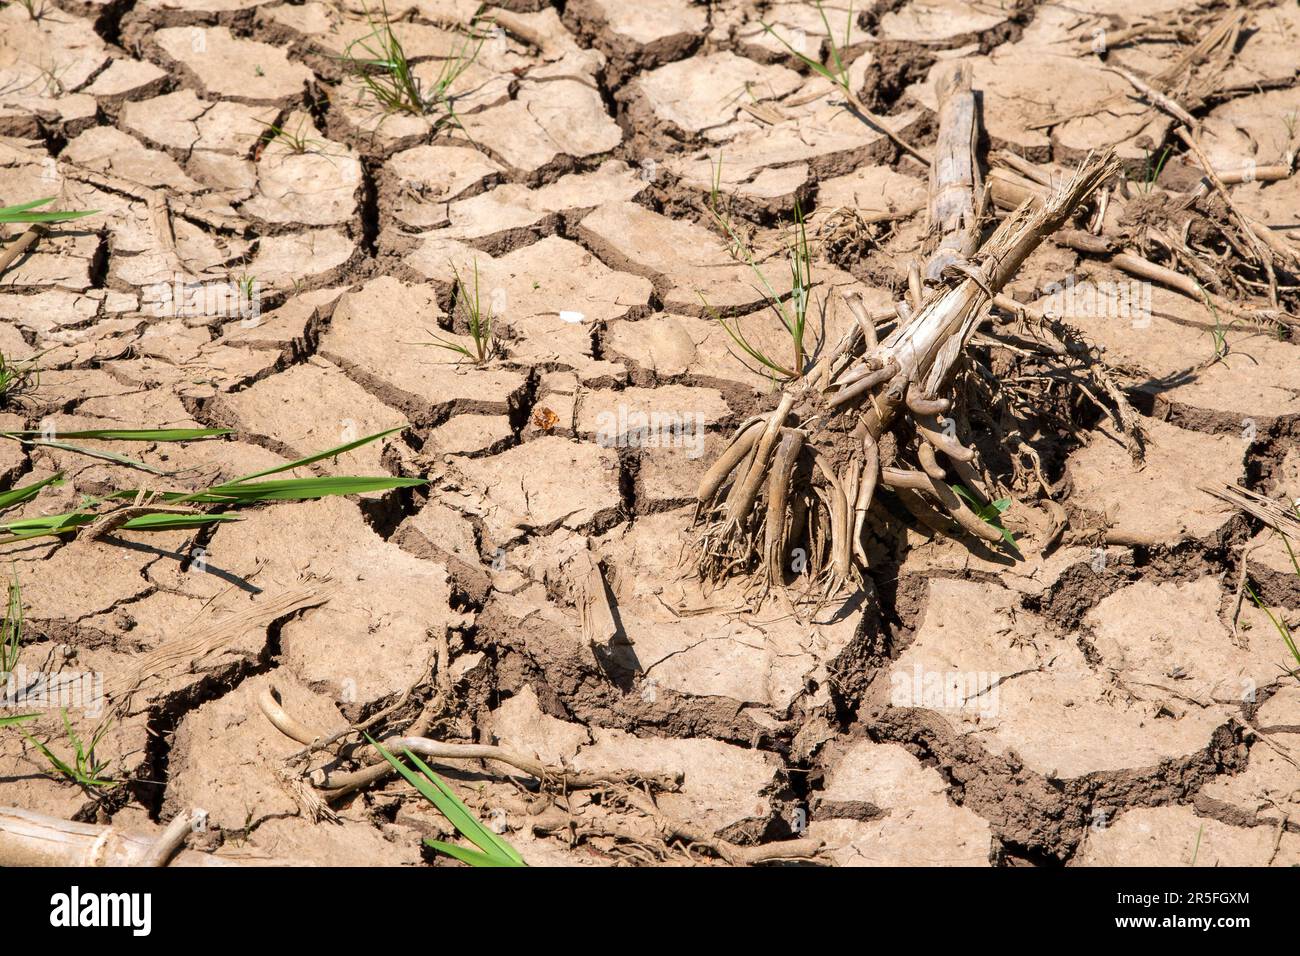 Ein gerissenes, trockenes Maisfeld und die verwelkten Maiswurzeln sind traurige Symbole für die Herausforderungen, vor denen die Landwirtschaft steht. Stockfoto